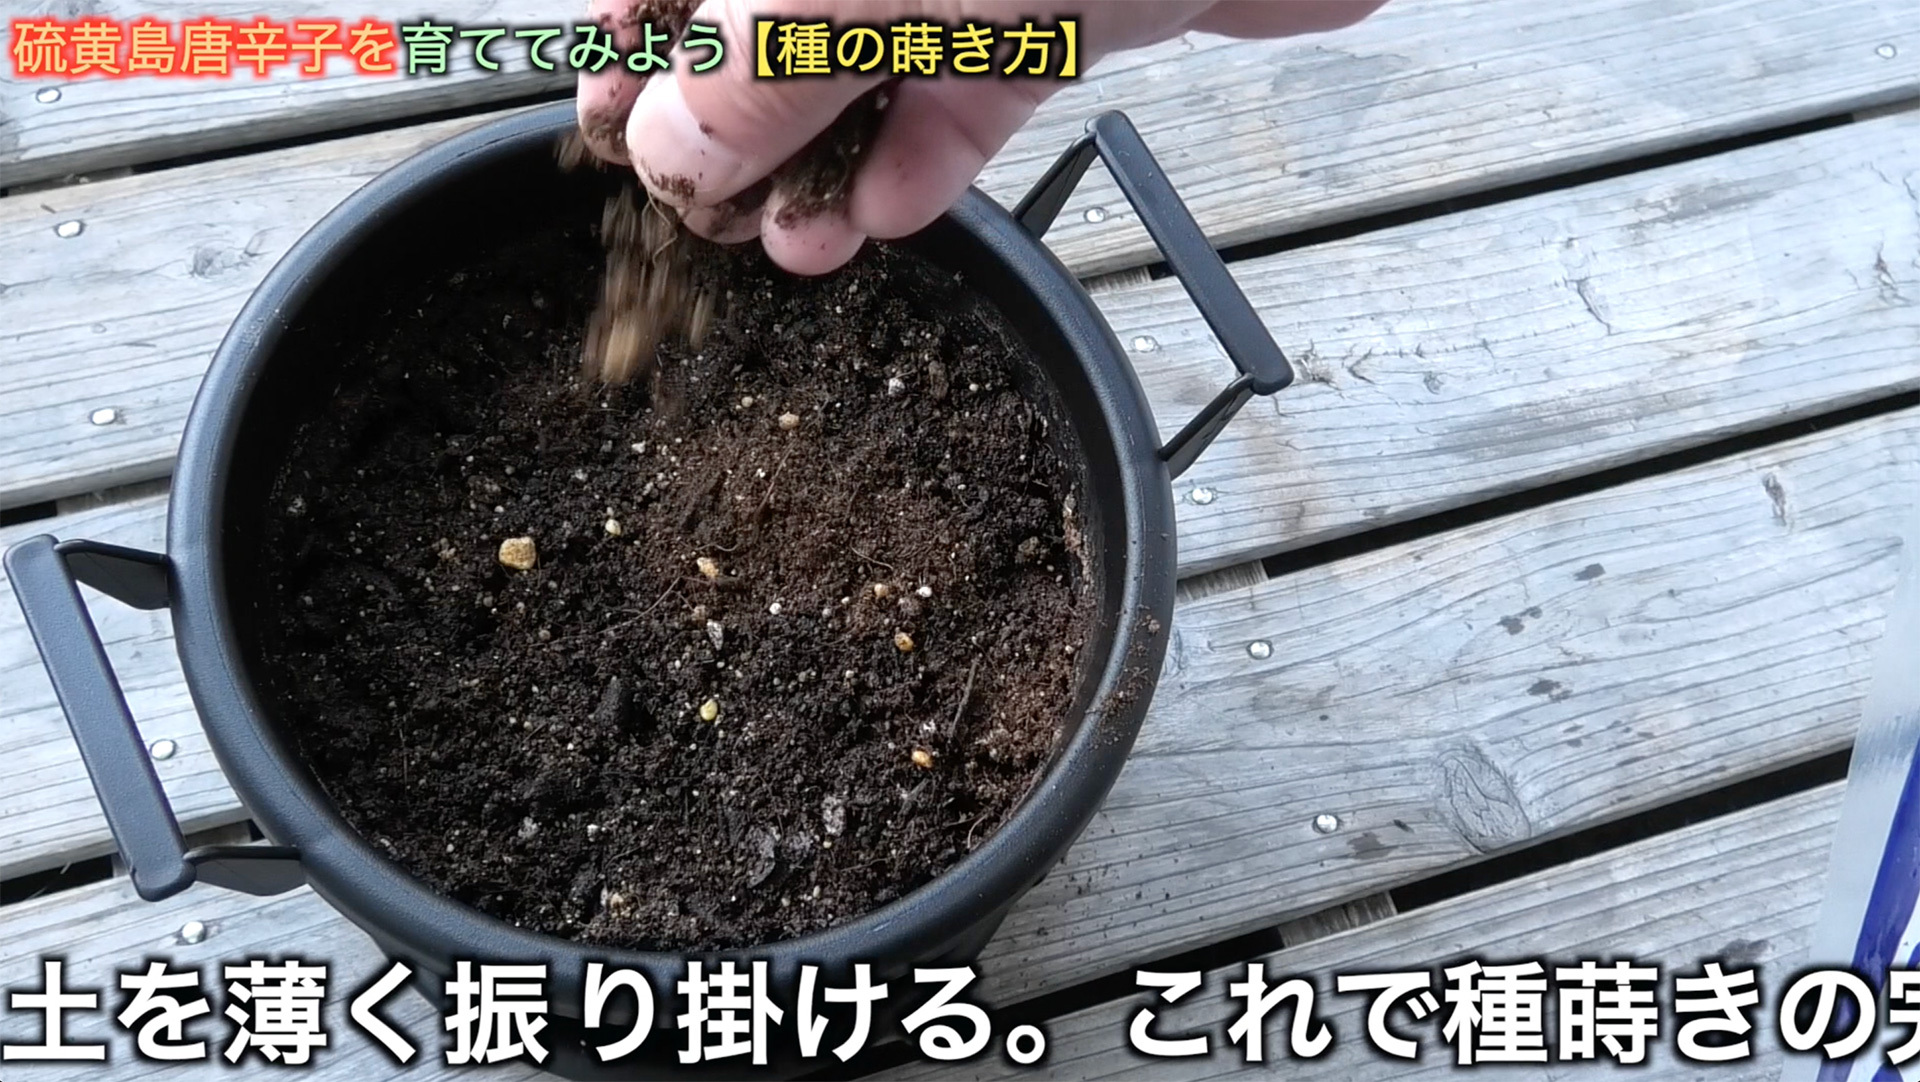 用土の上に置いた種子にごく少量の土を振り掛ける